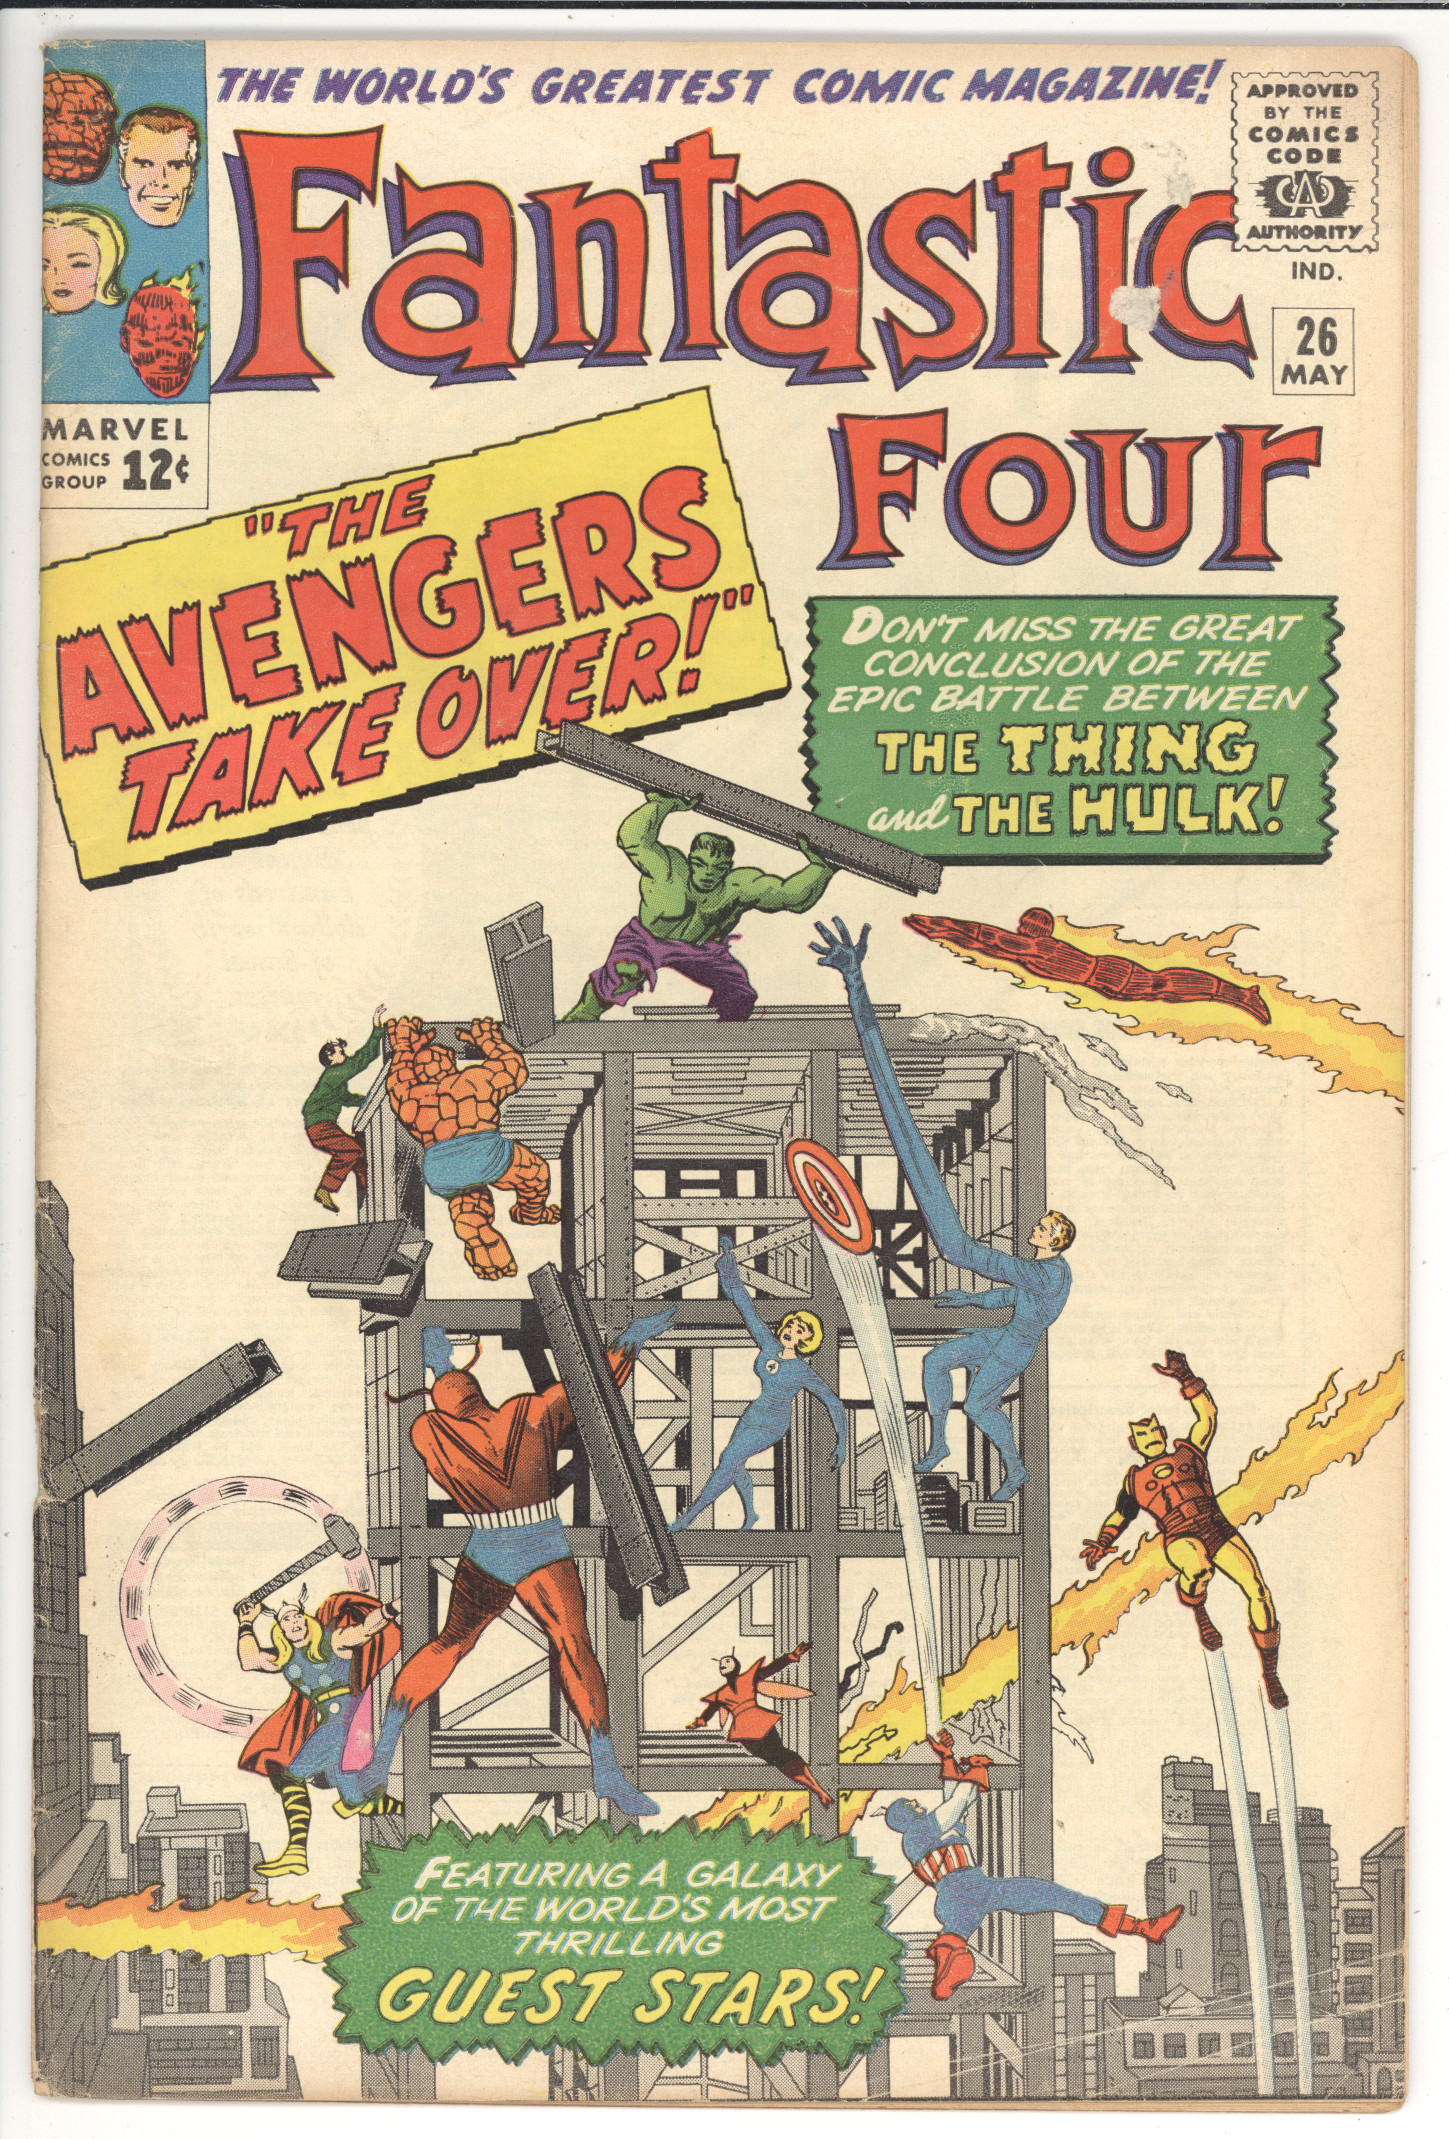 Fantastic Four #26 front